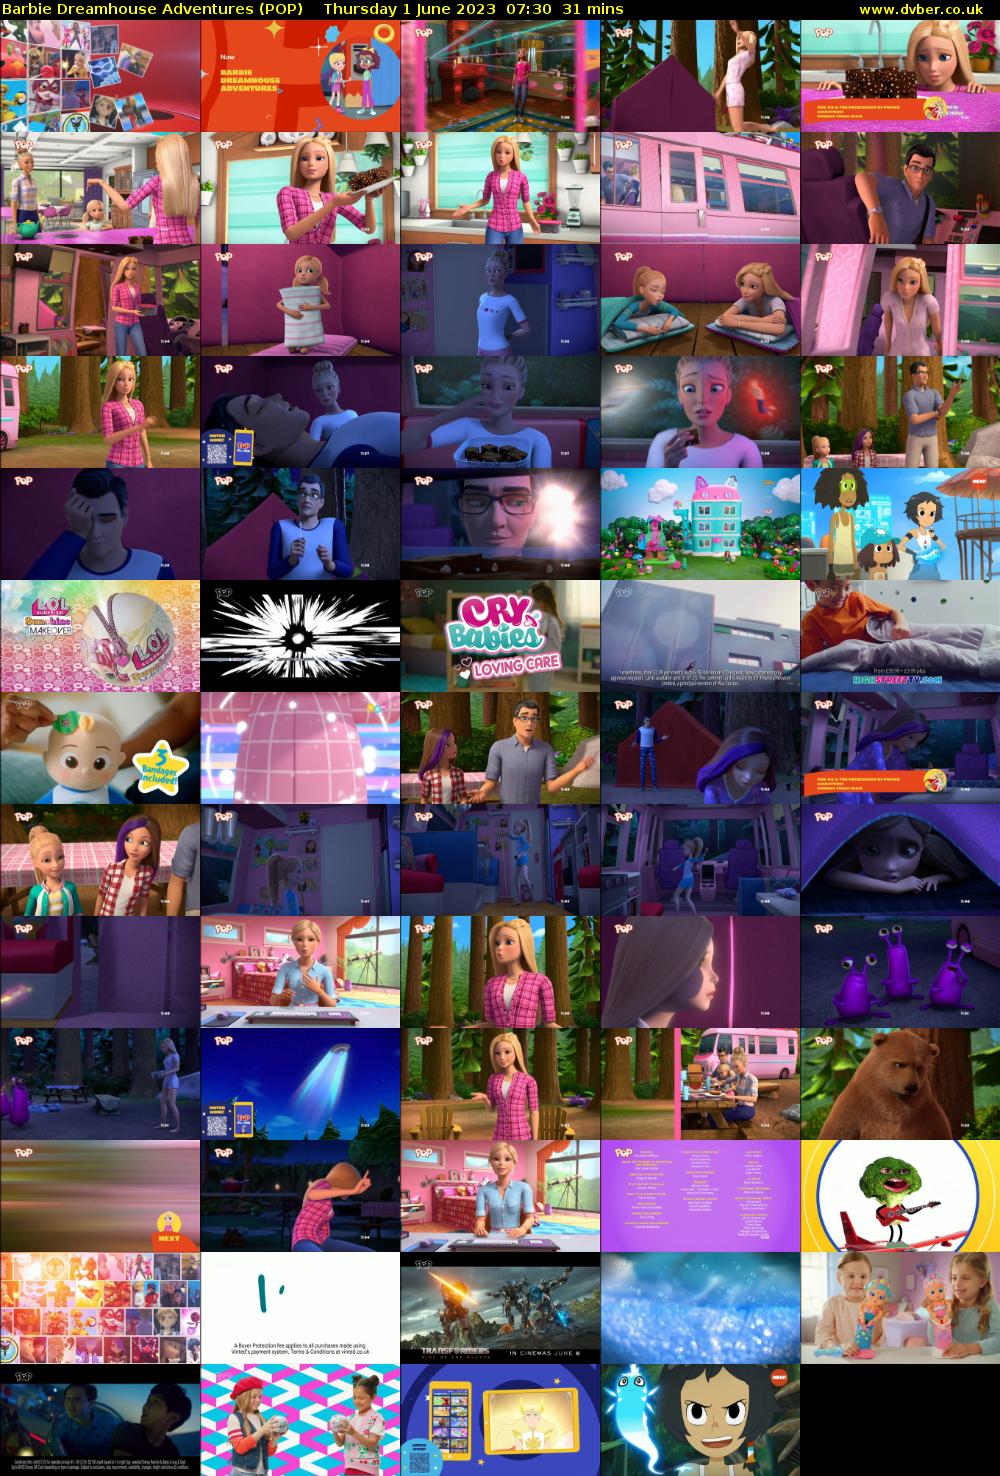 Barbie Dreamhouse Adventures (POP) Thursday 1 June 2023 07:30 - 08:01